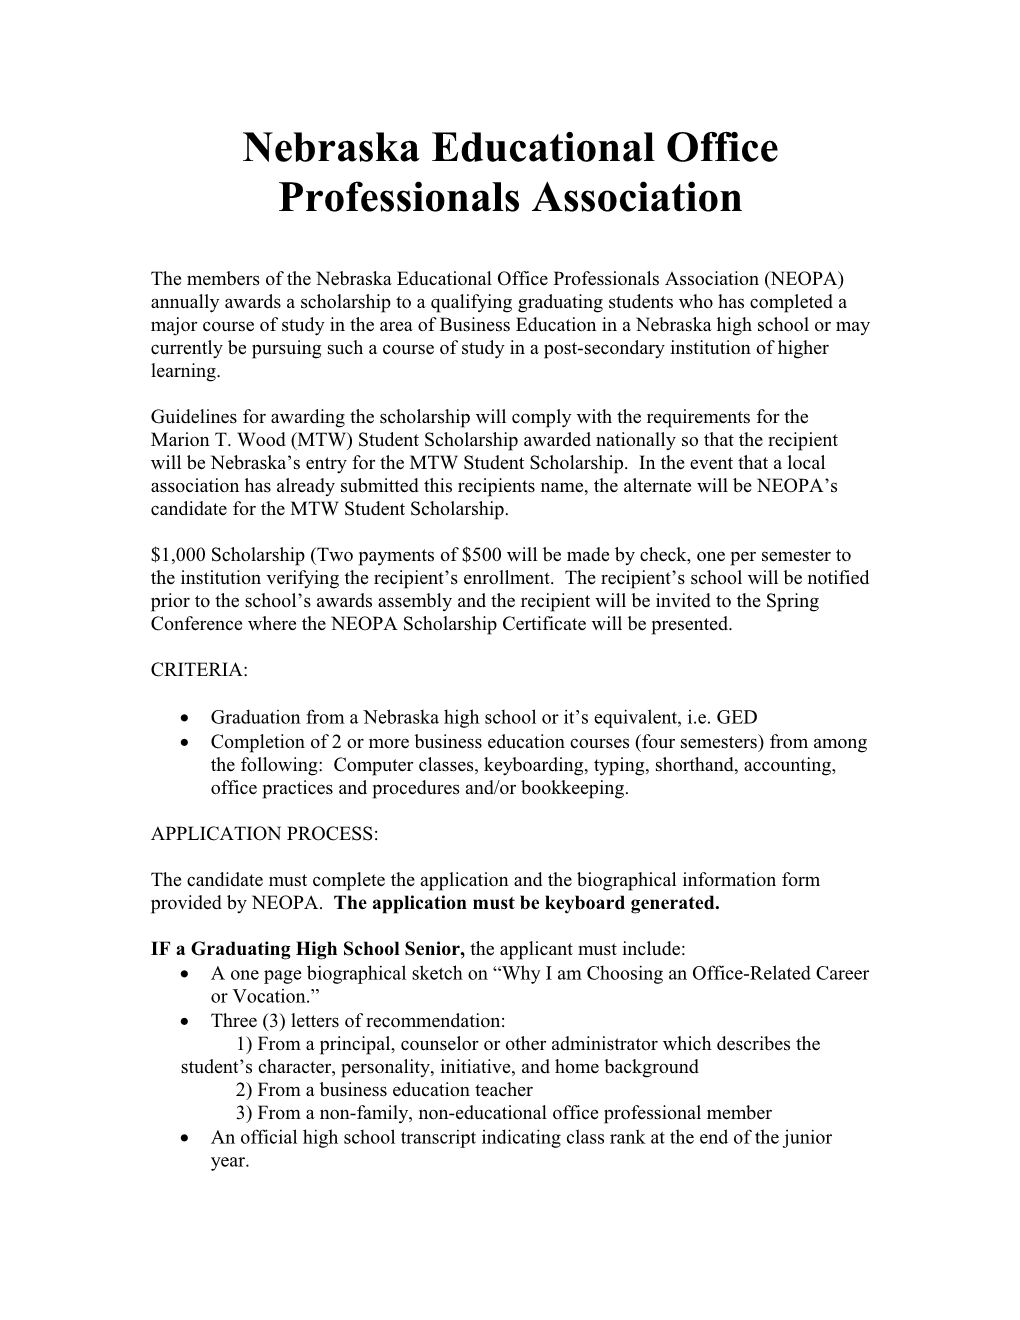 Nebraska Educational Office Professionals Association